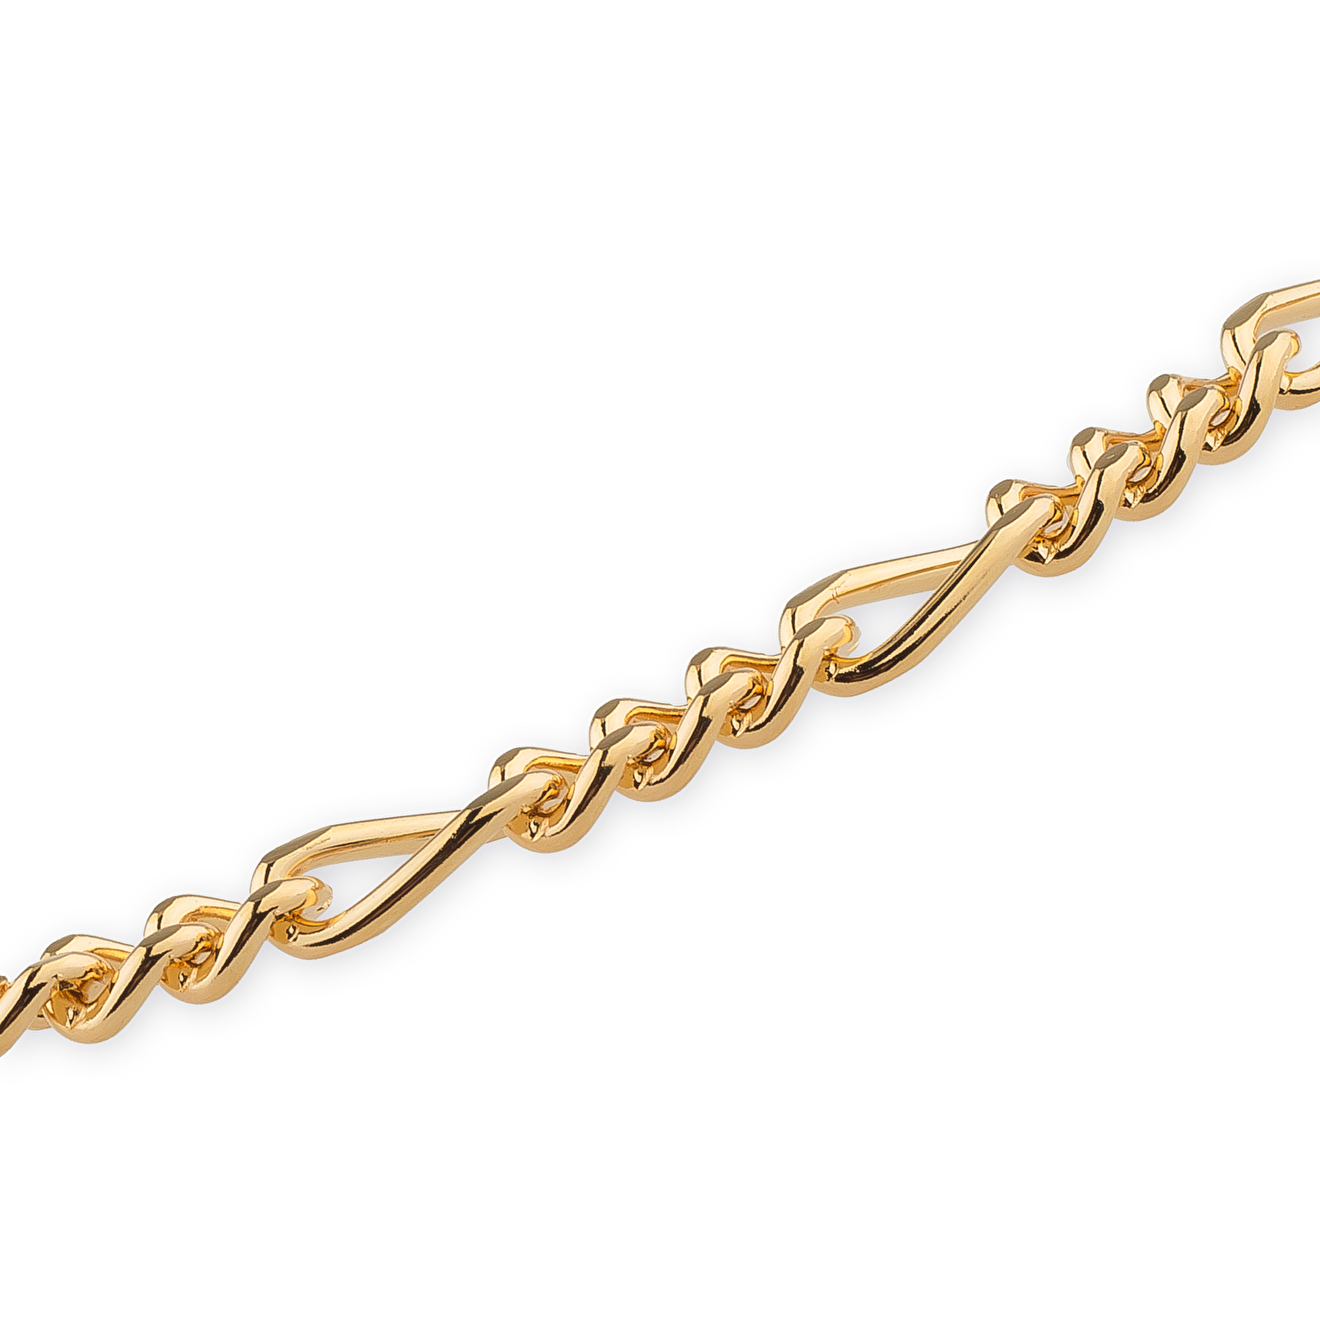 Aqua Золотистое колье-цепь с перекрученными звеньями aqua колье цепь с прозрачными и золотистыми звеньями